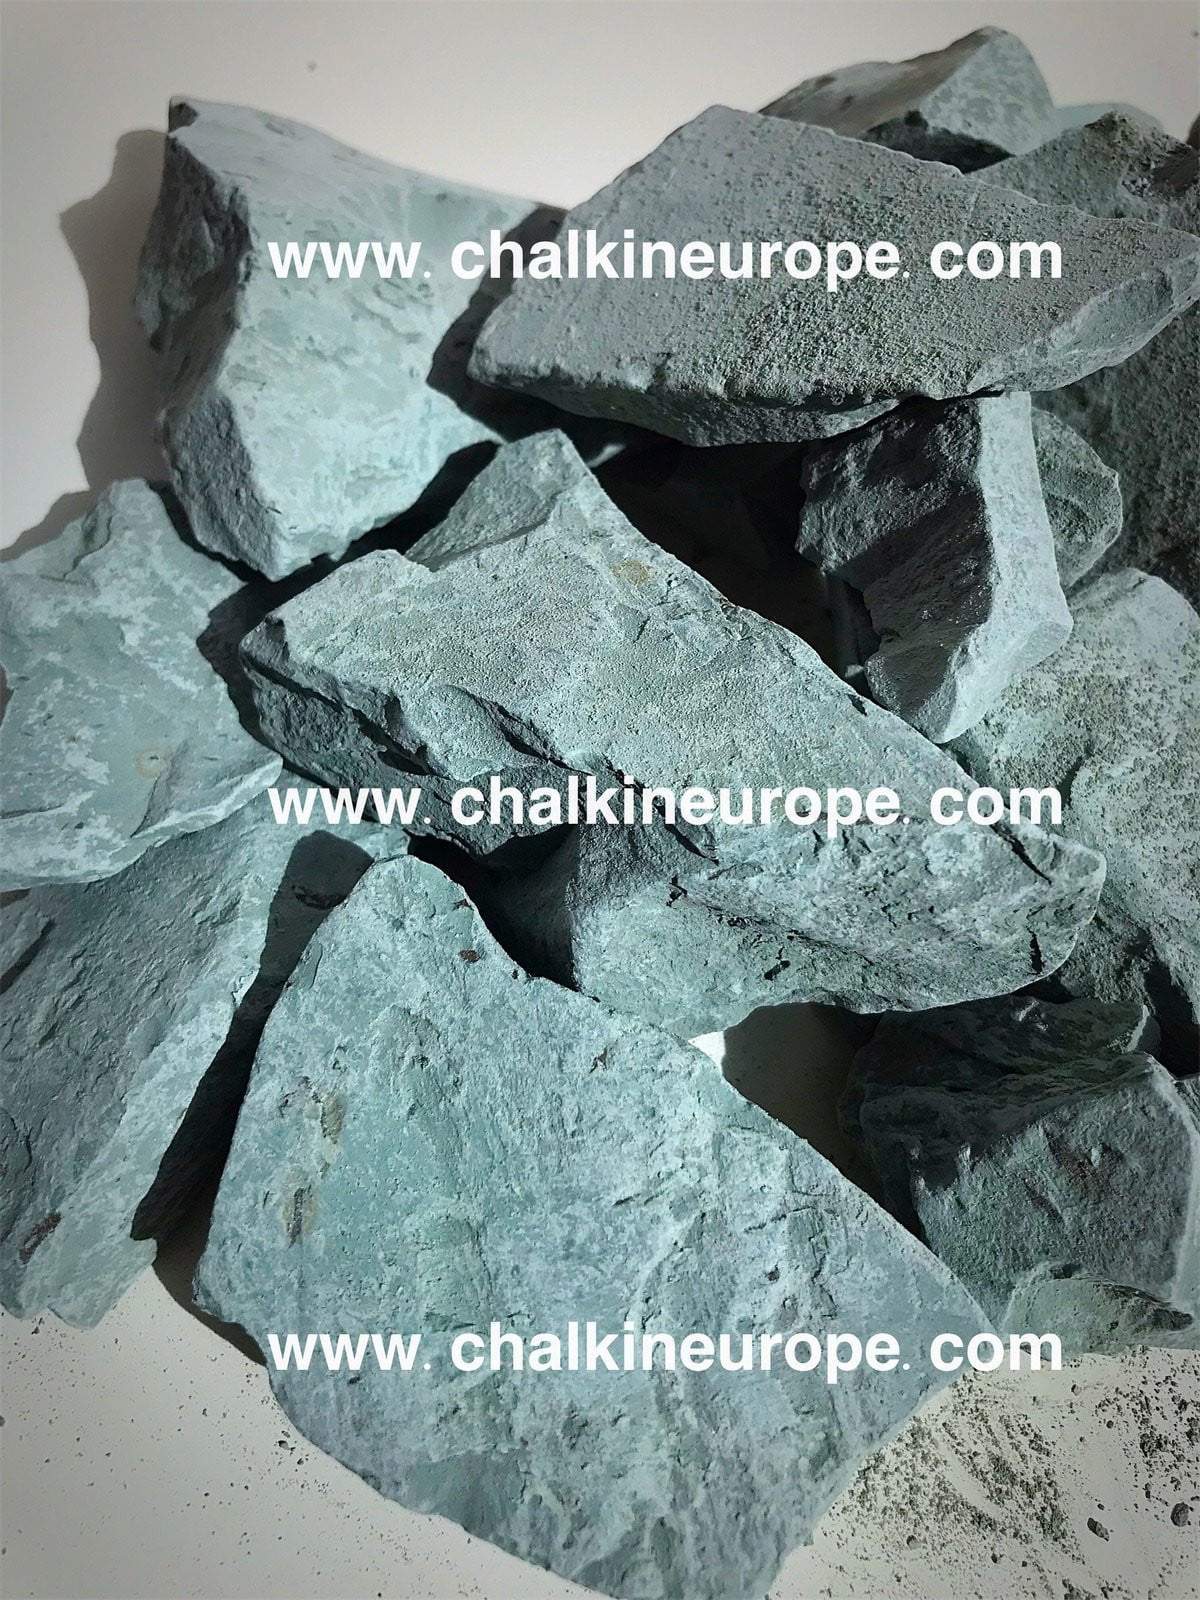 Argile bleue cambrienne - Chalkineurope